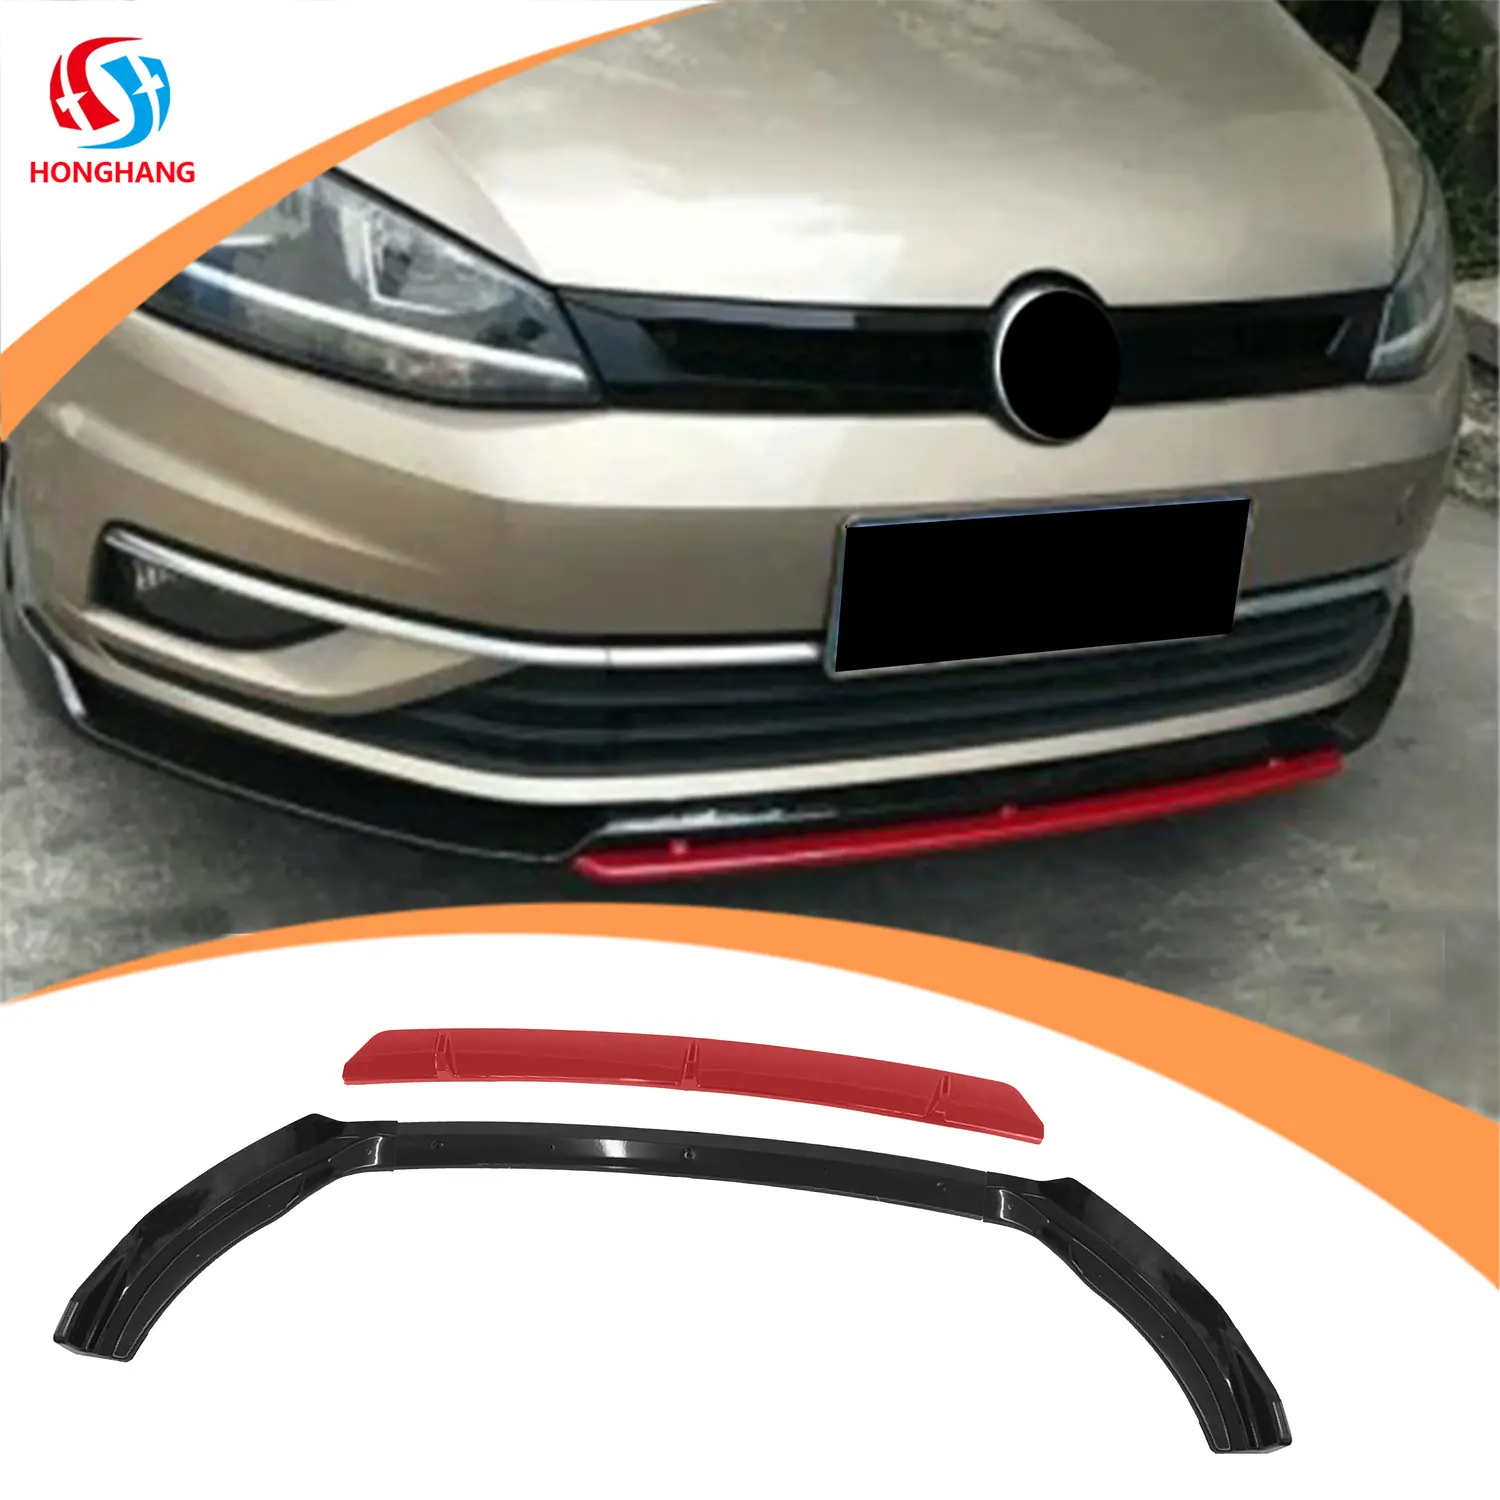 Honghang vendita di fabbrica labbro Splitter paraurti anteriore per auto a 4 stadi, labbro paraurti anteriore nero + rosso labbra anteriori per Polo V.w 2019 +